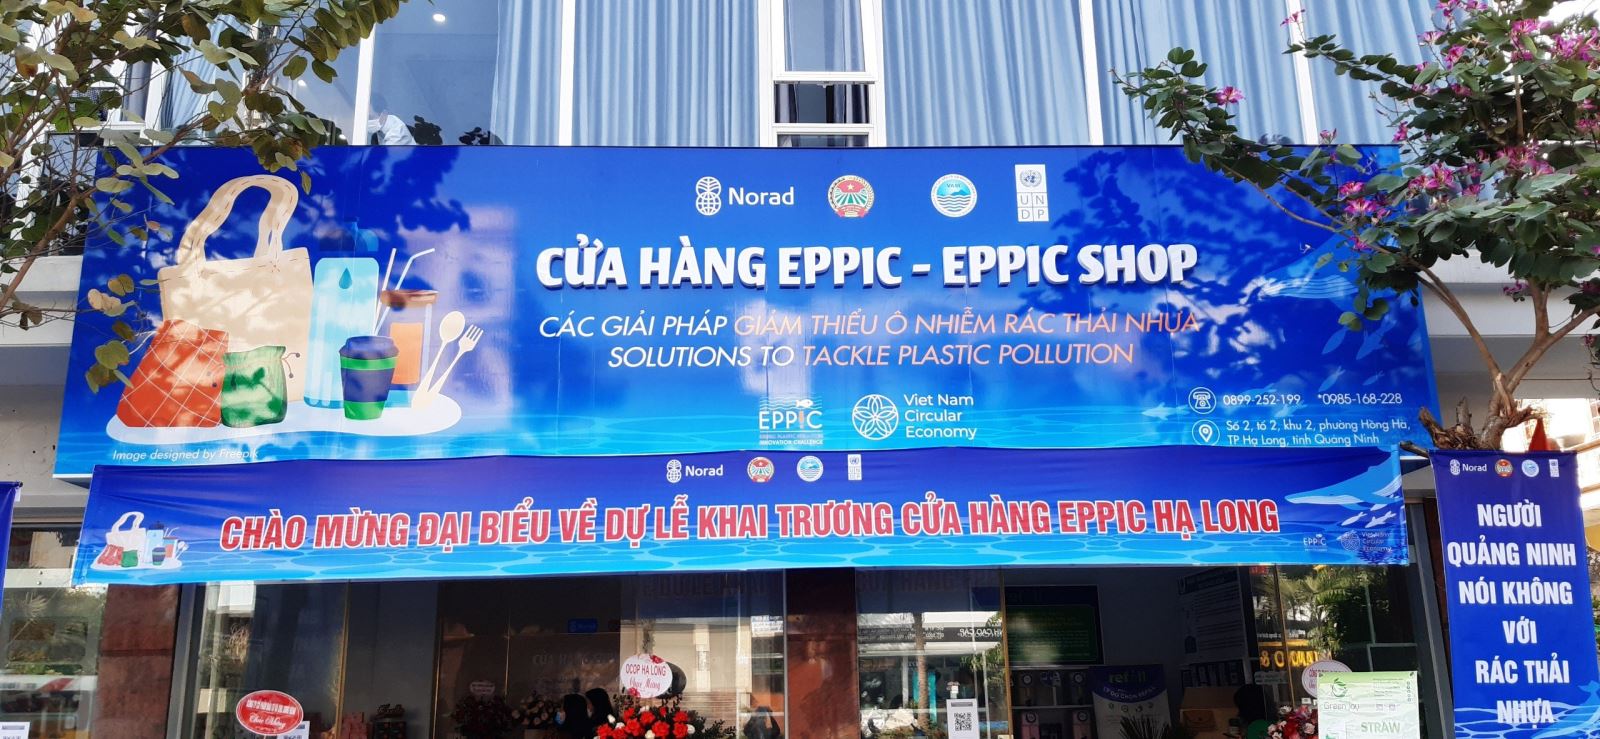 Mô hình “Cửa hàng Eppic” - Giải pháp giảm thiểu rác thải nhựa cần được nhân rộng